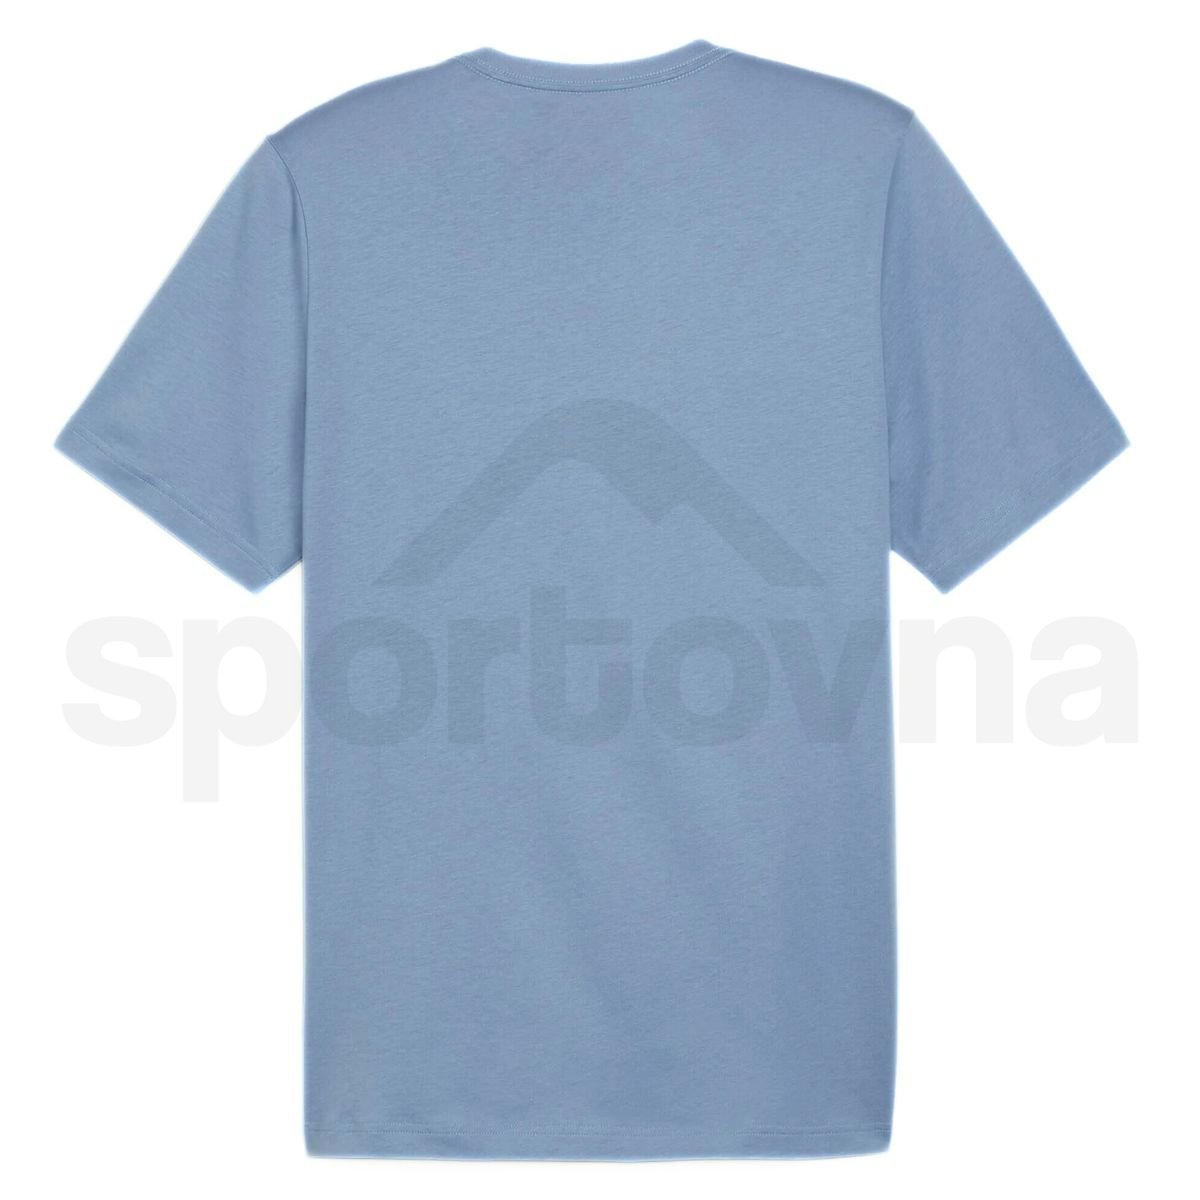 Tričko Puma ESS Logo Tee W - modrá